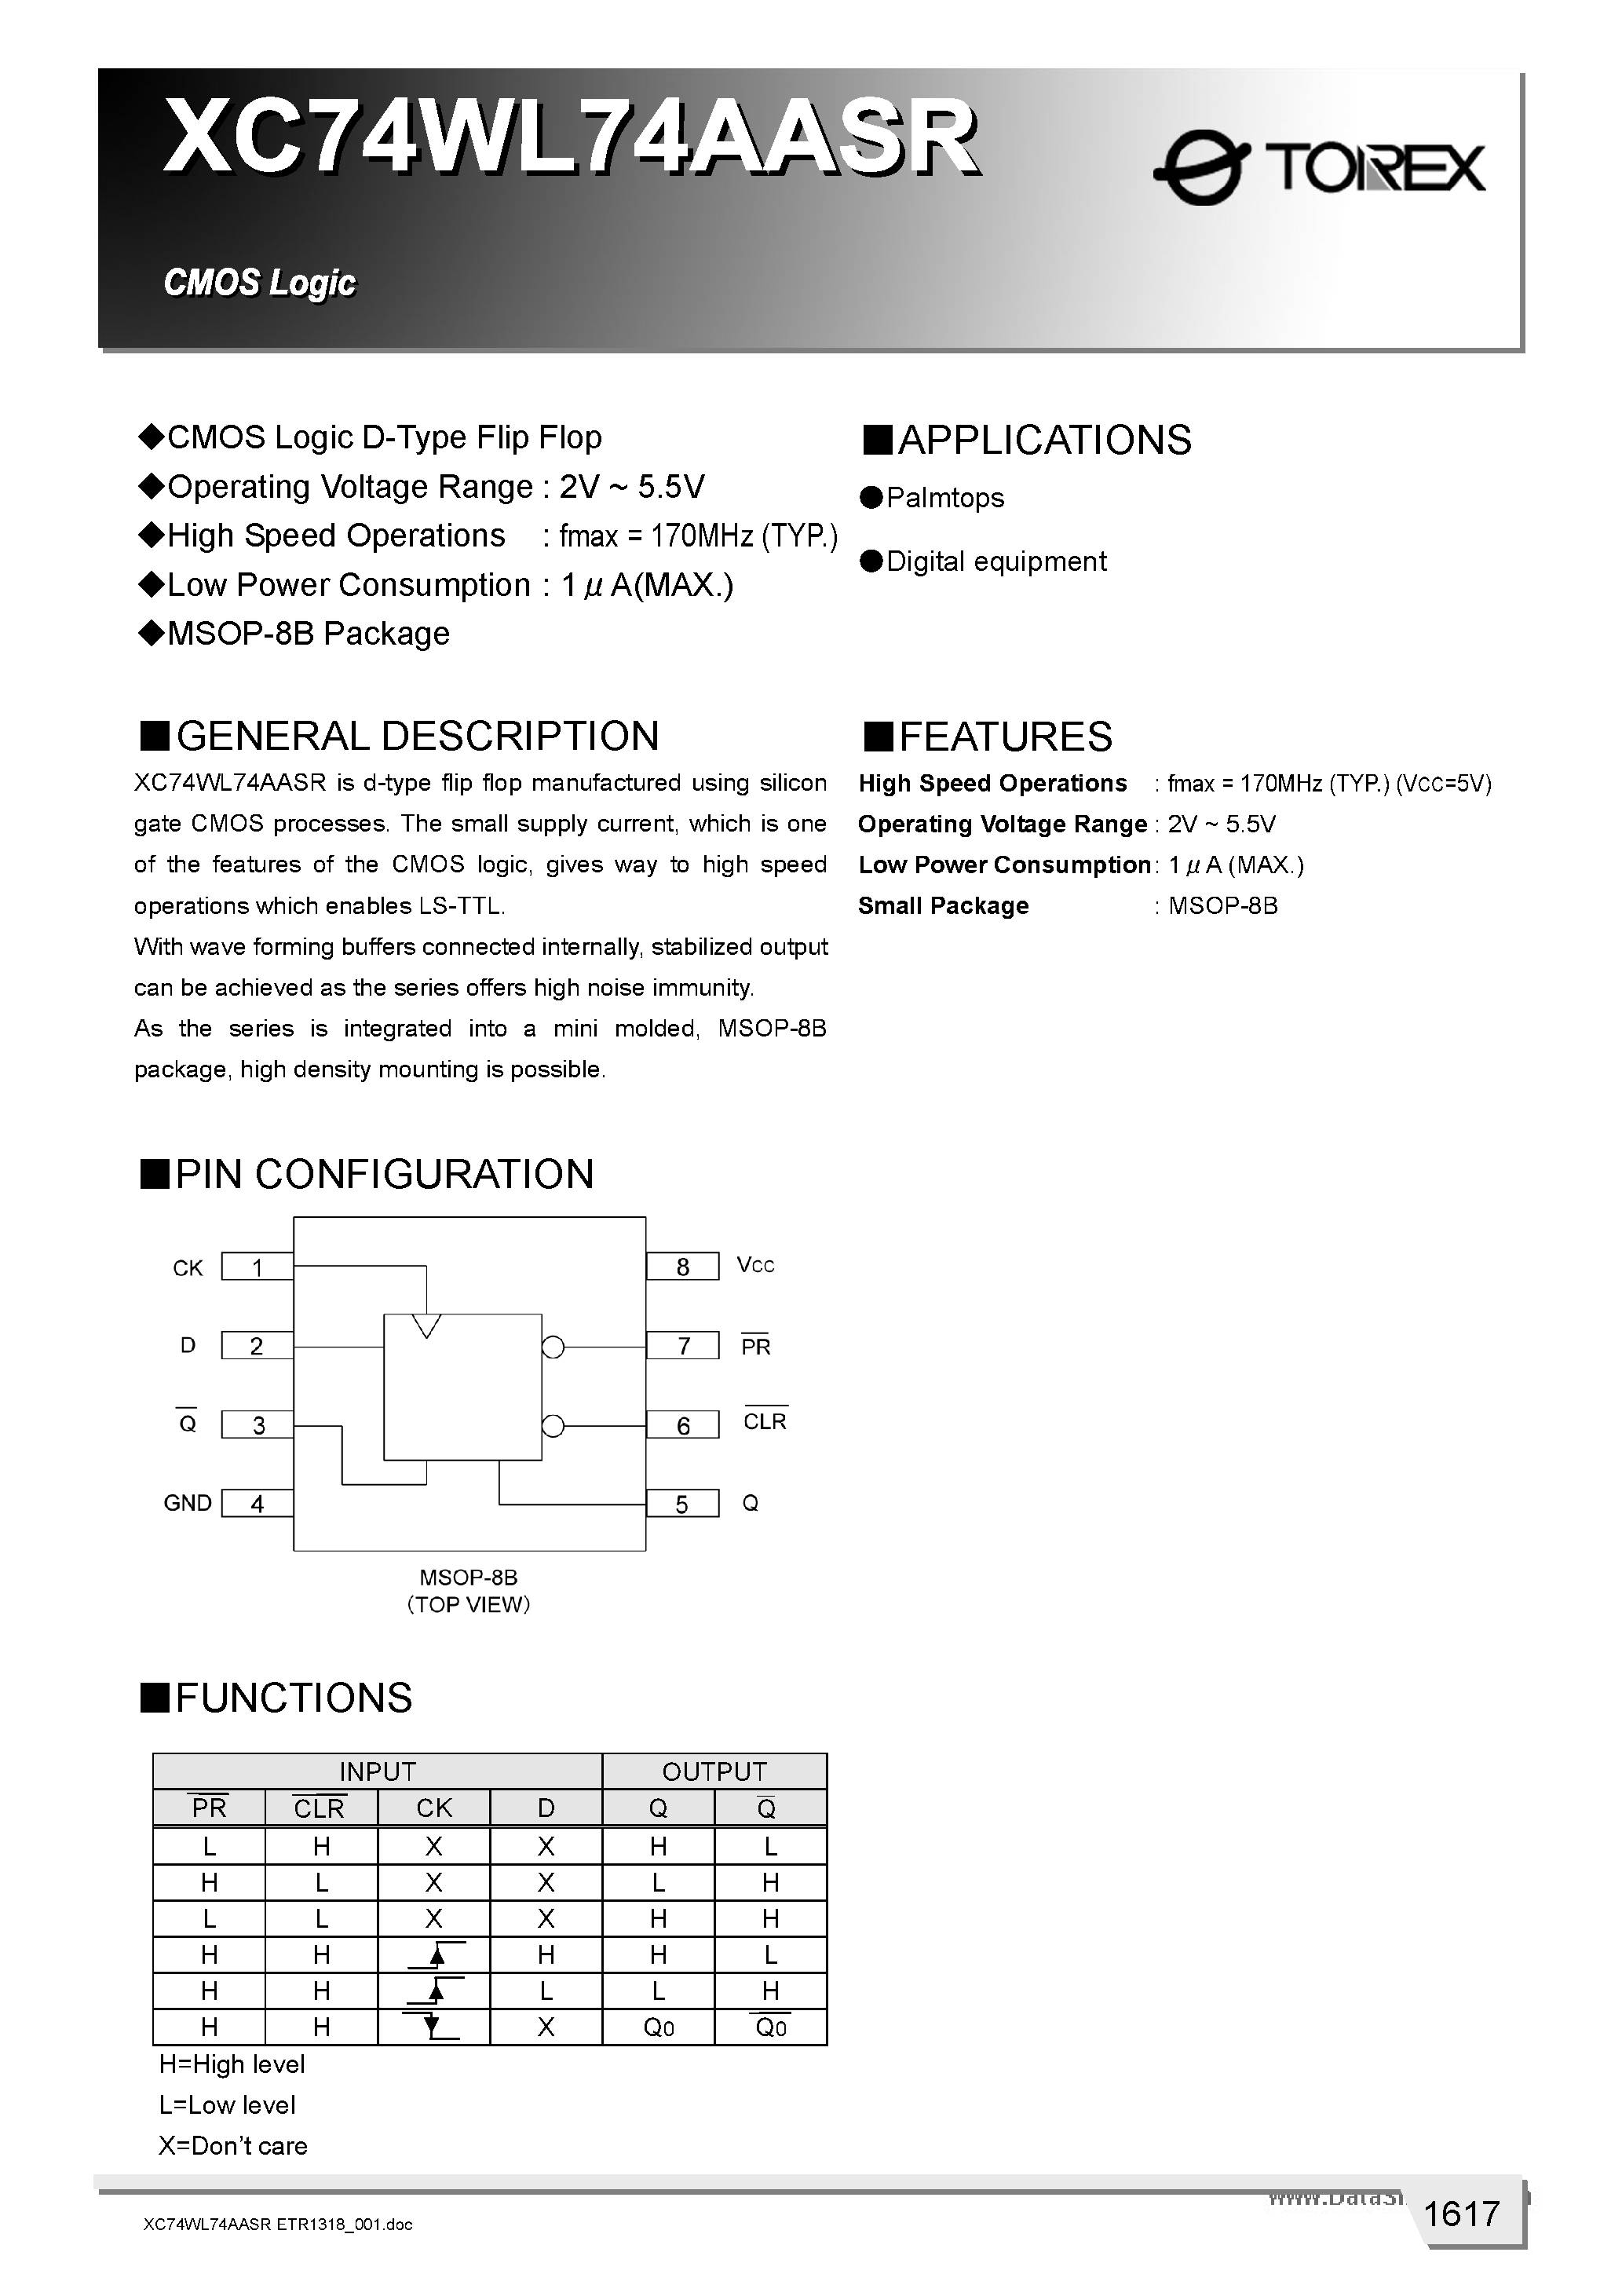 Даташит XC74WL74AASR - CMOS Logic D-Type Flip Flop страница 1